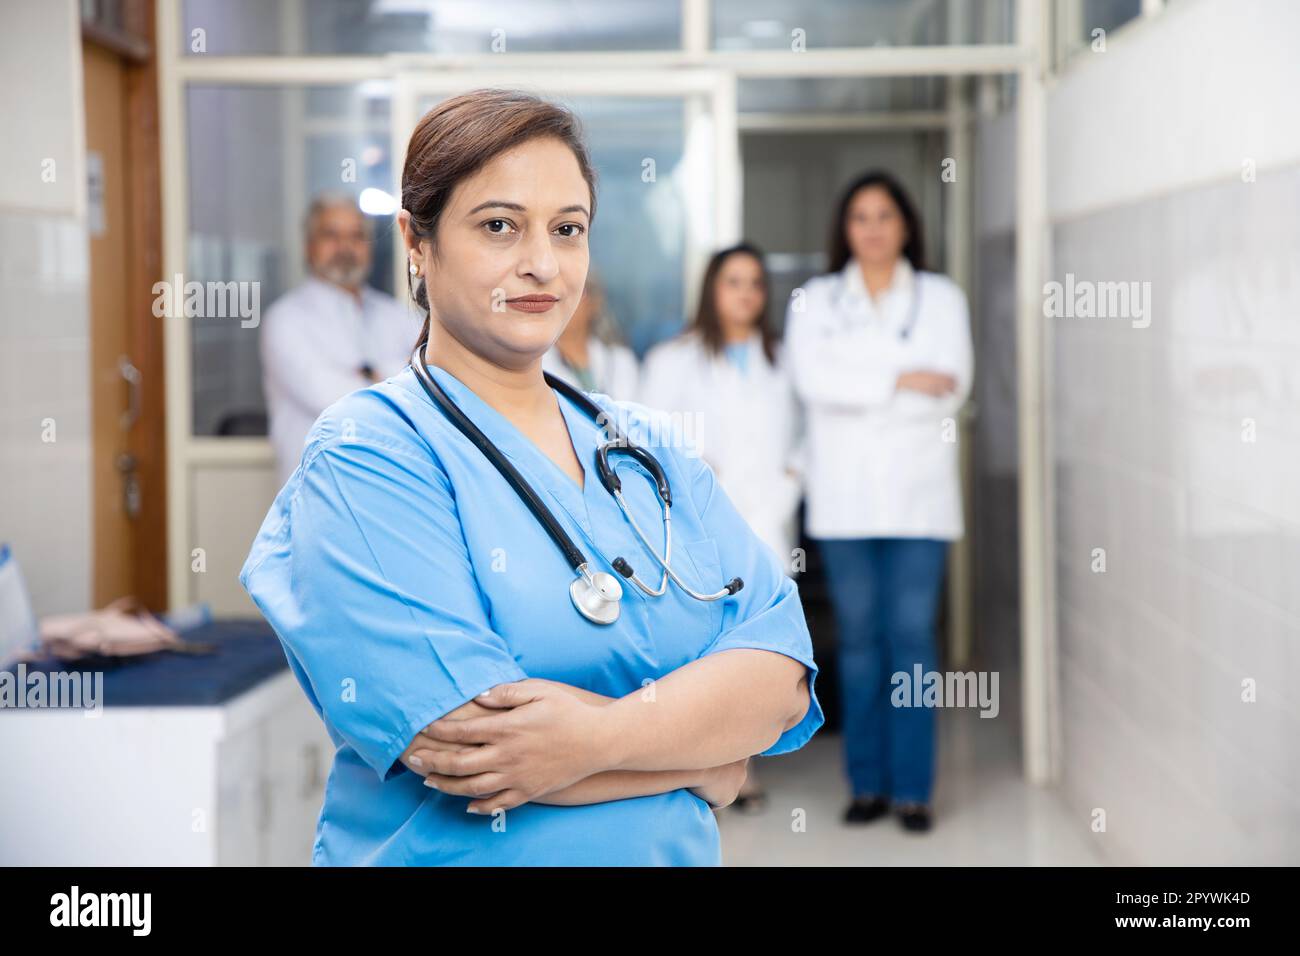 Personale medico femminile indiano e medico con stetoscopio in piedi in corridoio ospedale, sanità e concetto medico. Foto Stock